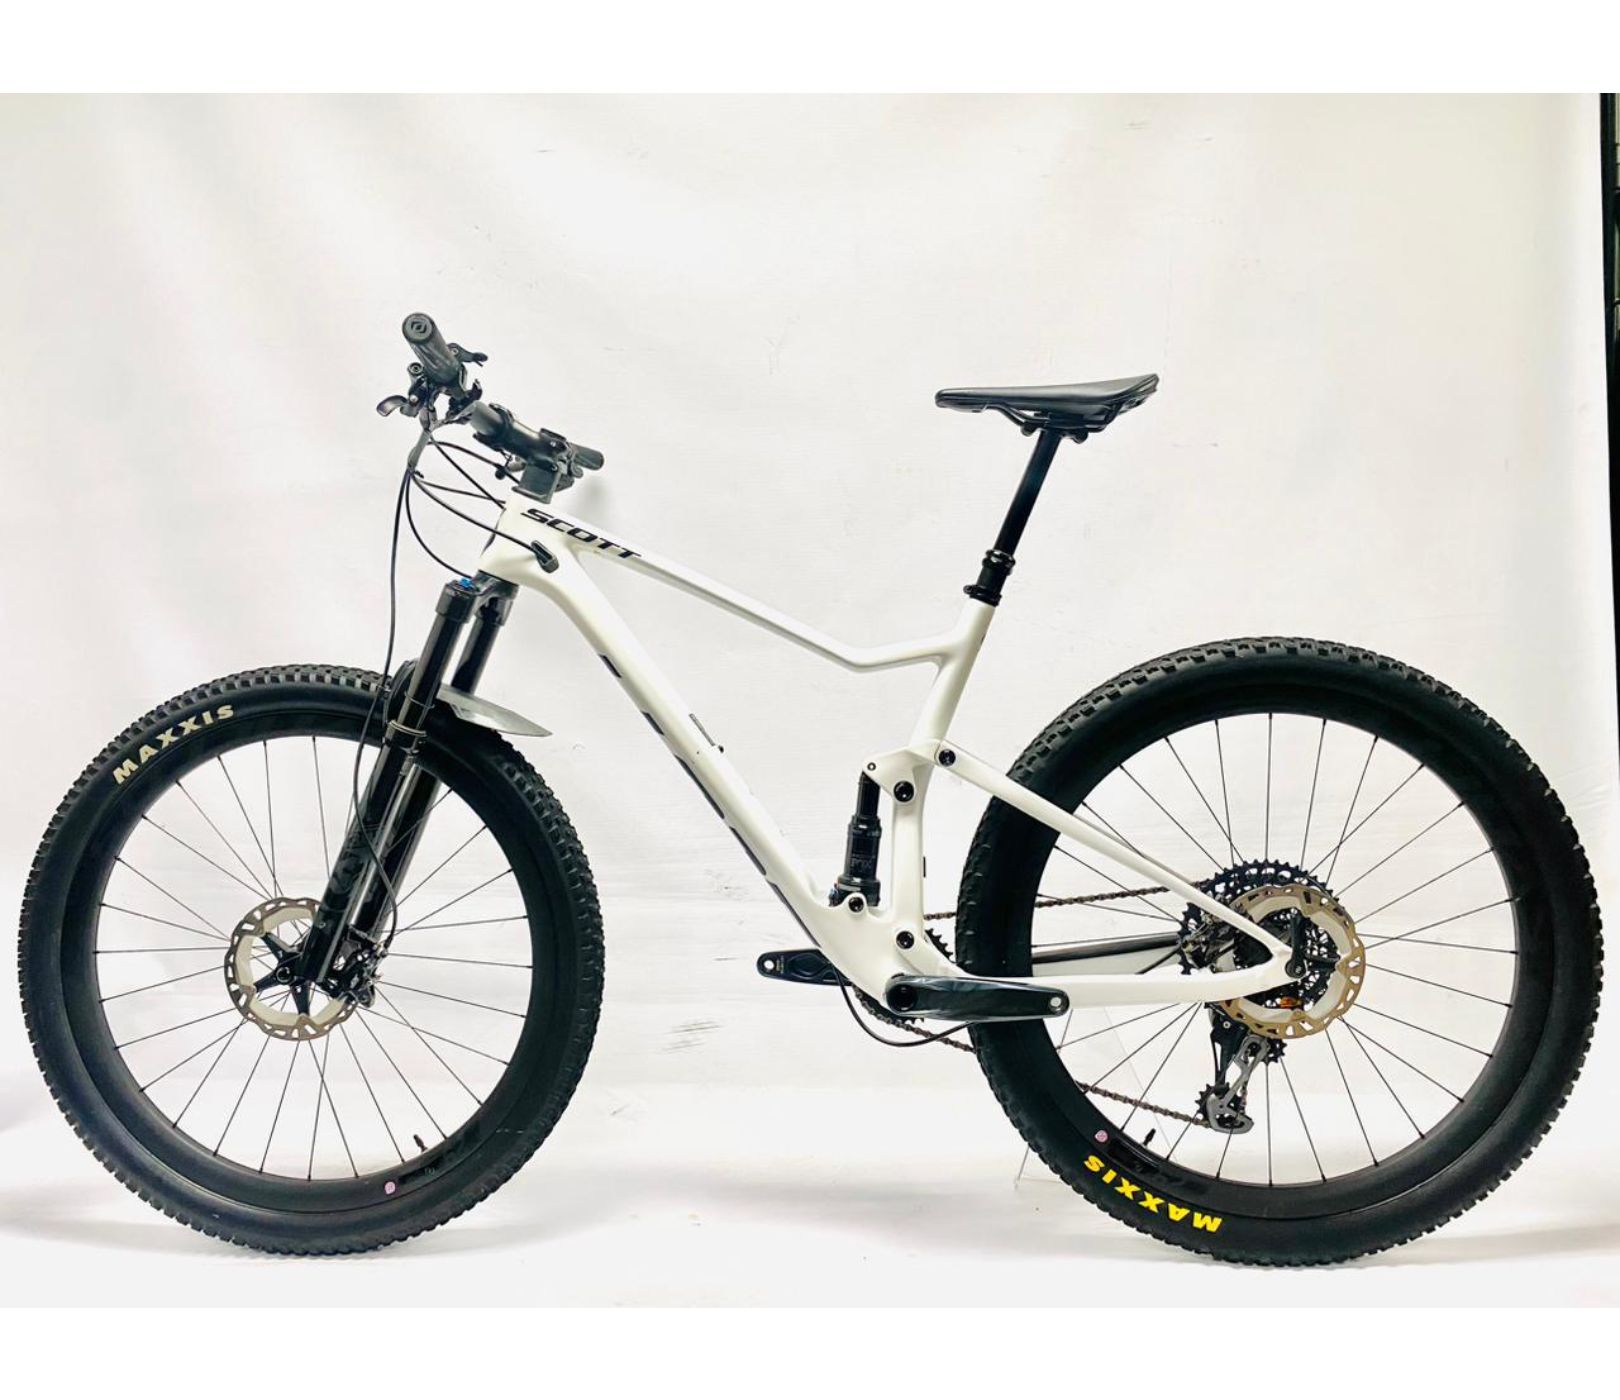 Pre-Owned Scott Spark 900 Carbon Dual Suspension Mountain Bike - M/L